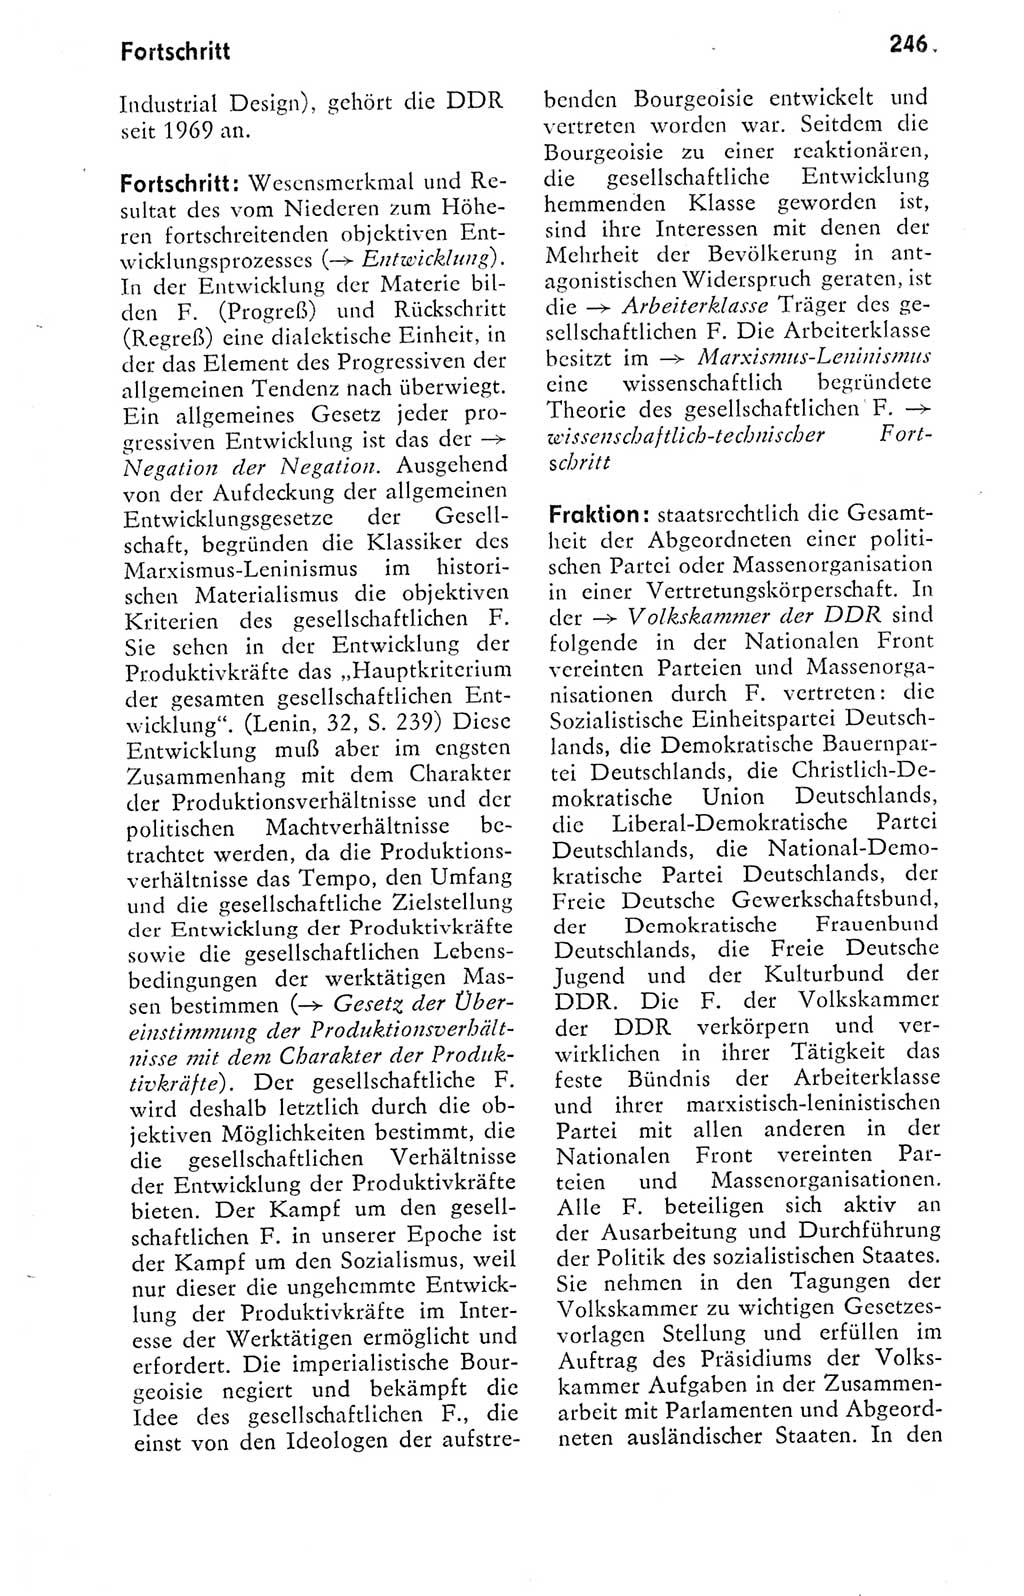 Kleines politisches Wörterbuch [Deutsche Demokratische Republik (DDR)] 1978, Seite 246 (Kl. pol. Wb. DDR 1978, S. 246)